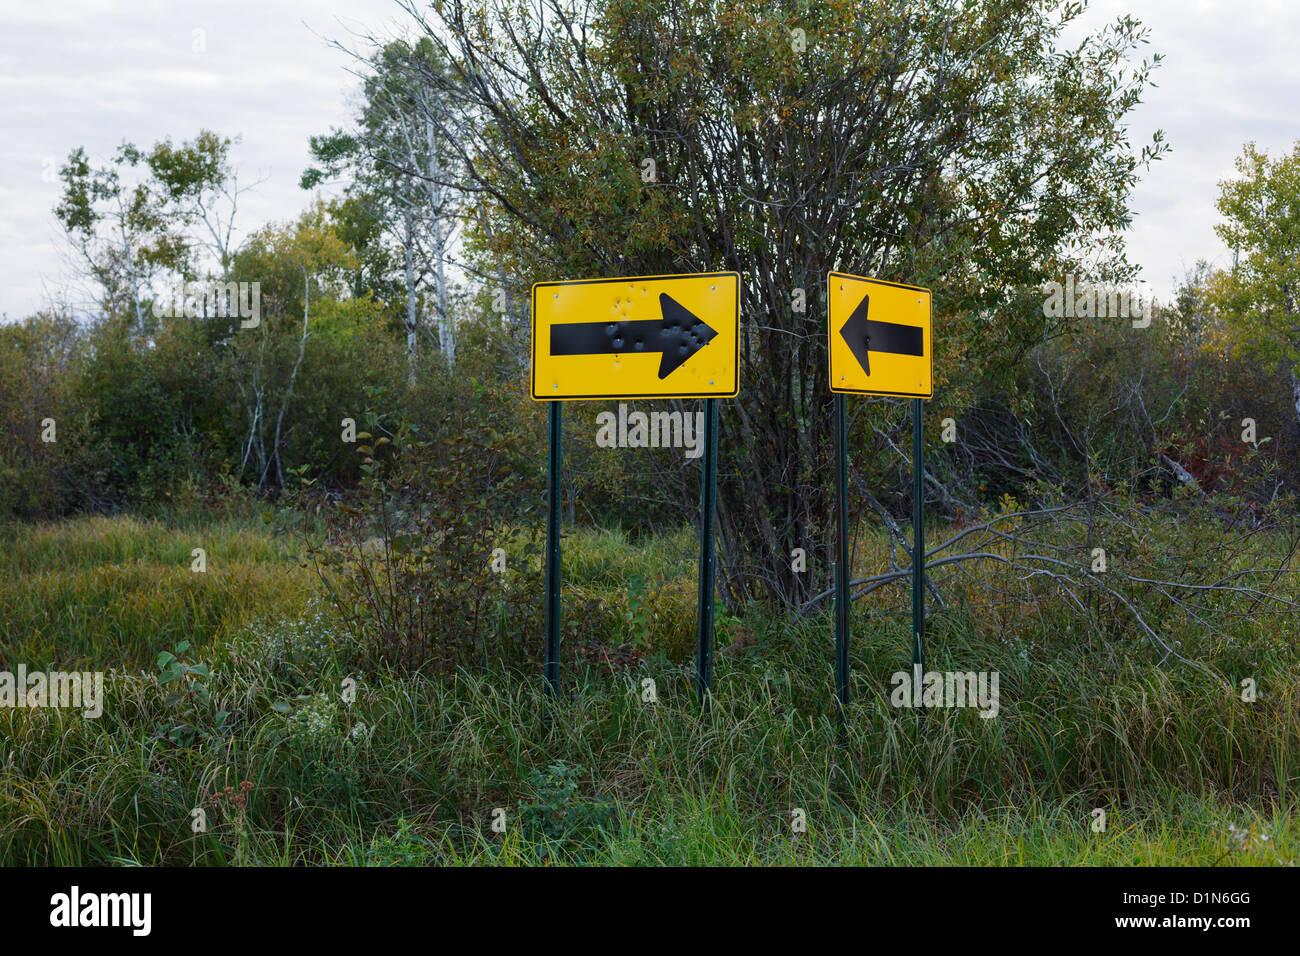 Flèches de signalisation dans un environnement rural bush. Banque D'Images